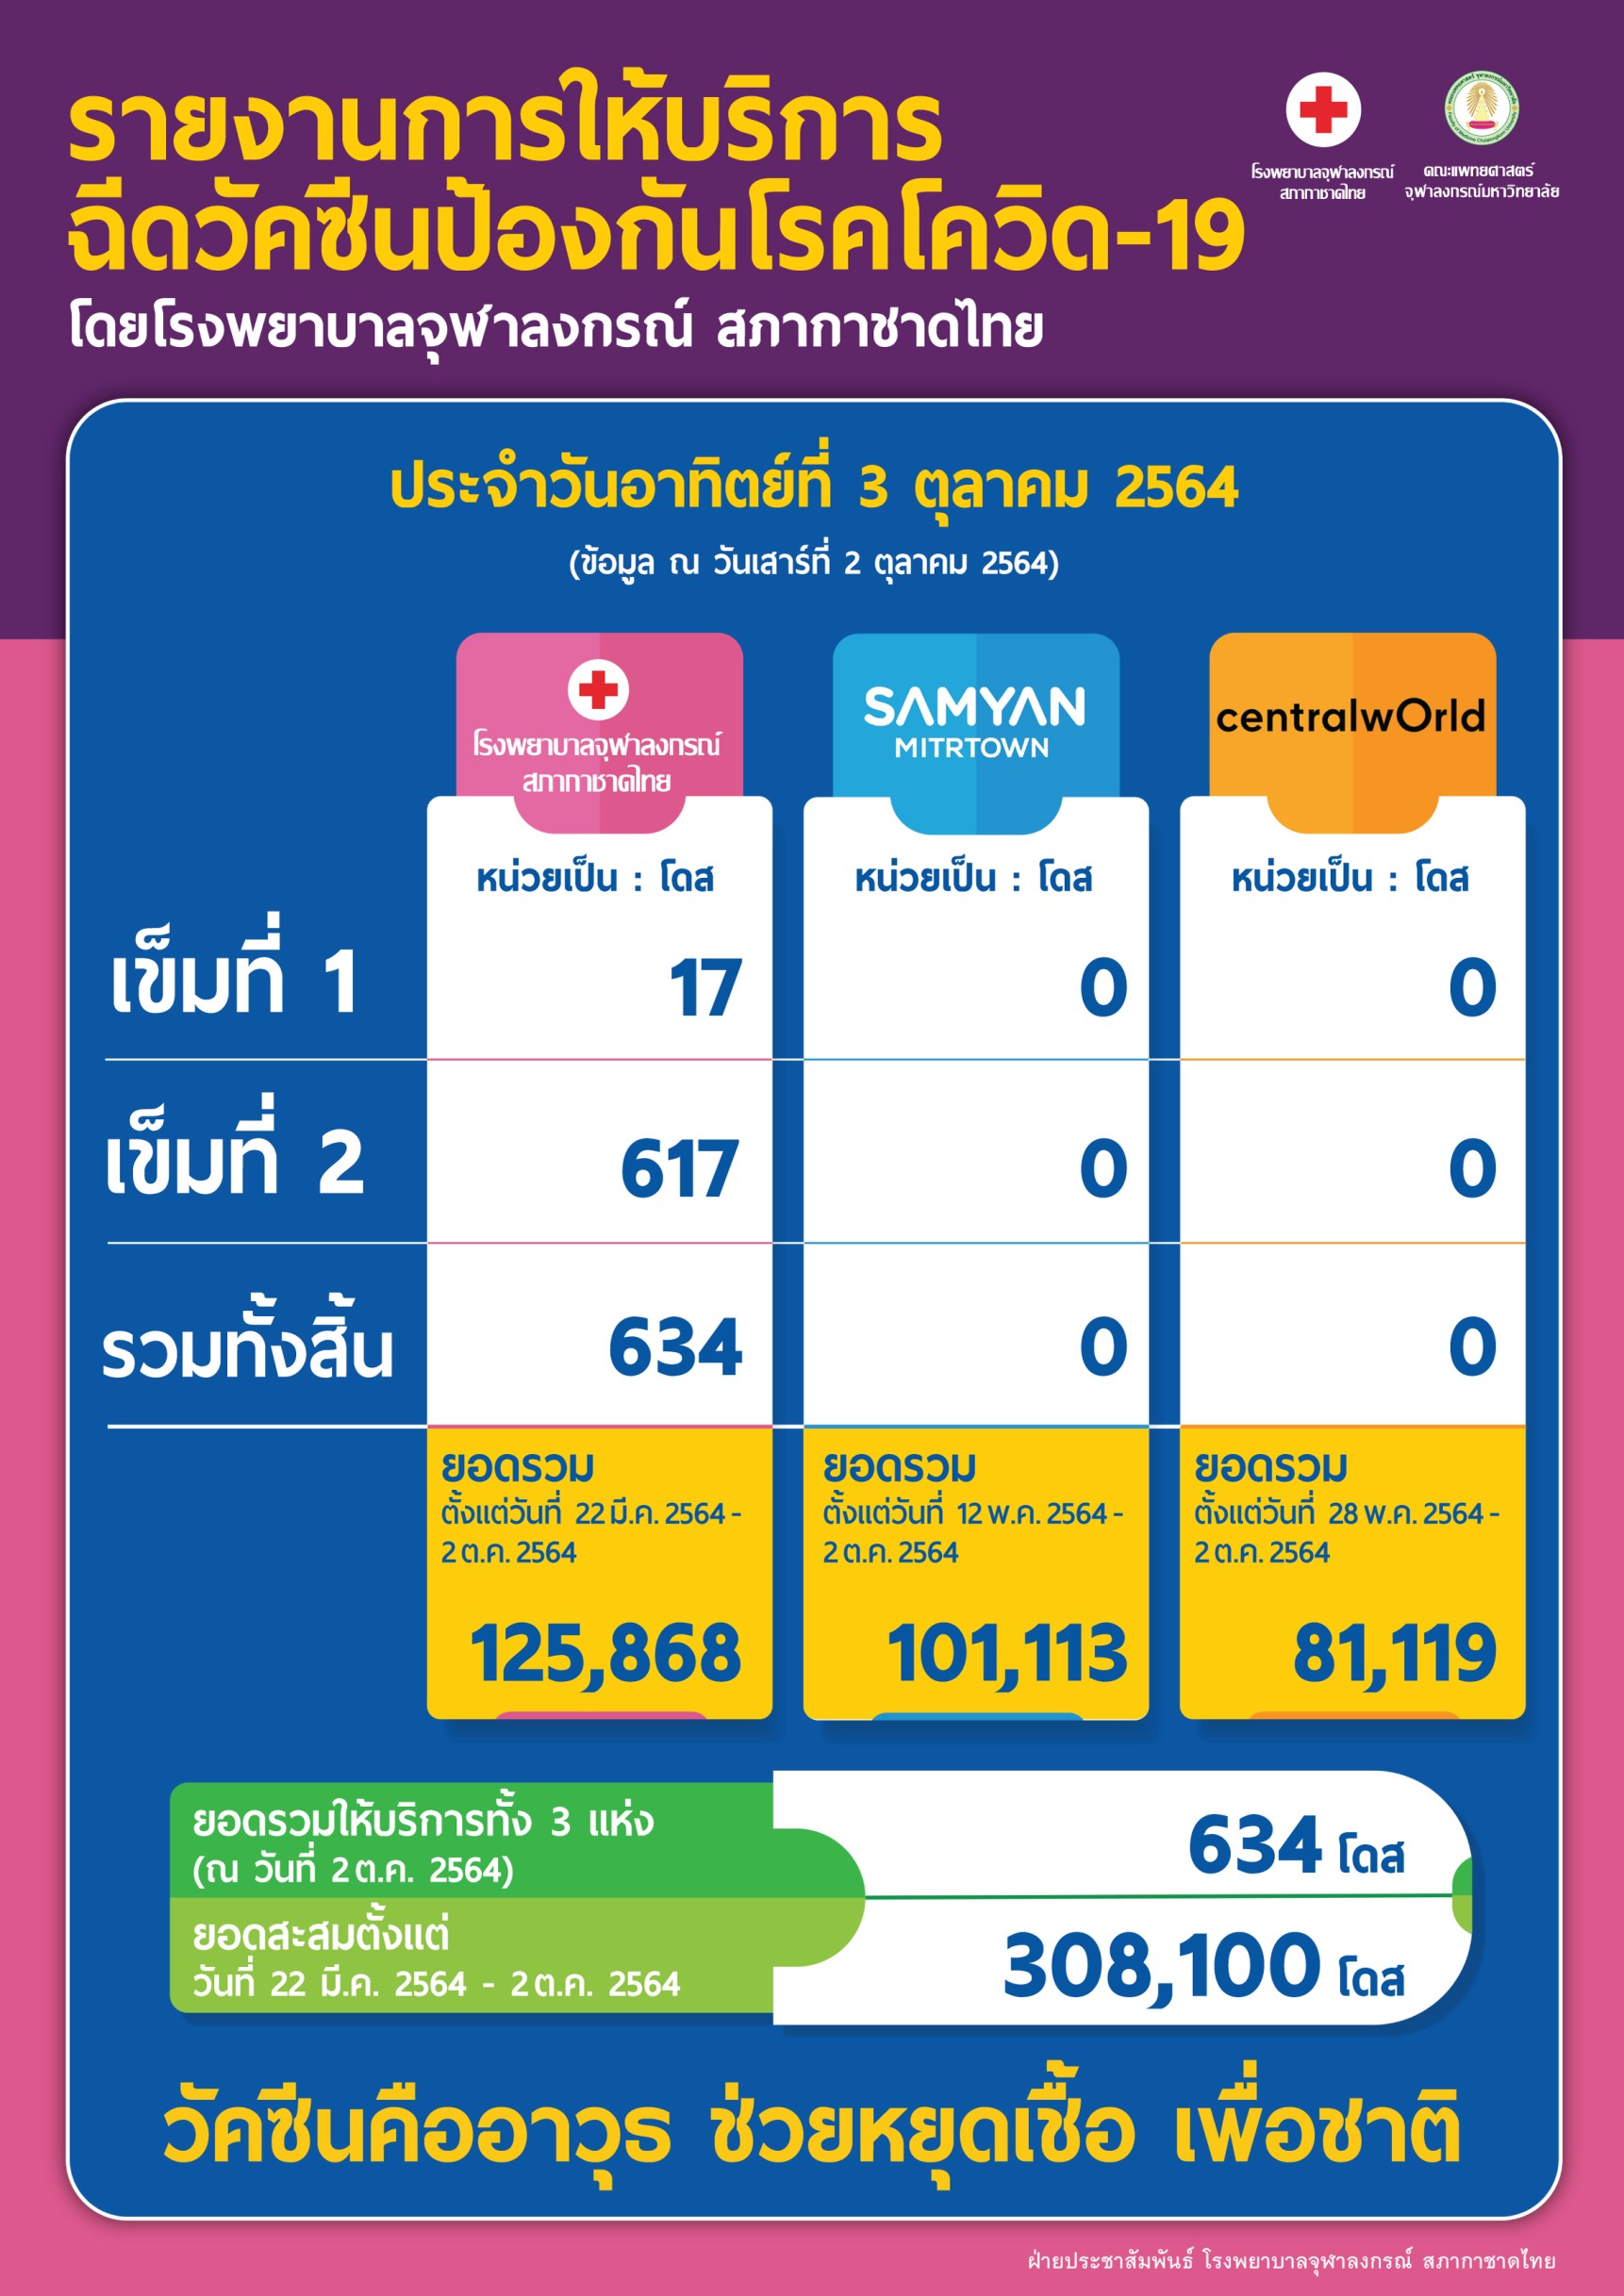 รายงานการให้บริการ ฉีดวัคซีนป้องกันโรคโควิด-19 โดยโรงพยาบาลจุฬาลงกรณ์ สภากาชาดไทย ประจำวันอาทิตย์ที่ 3 ตุลาคม 2564